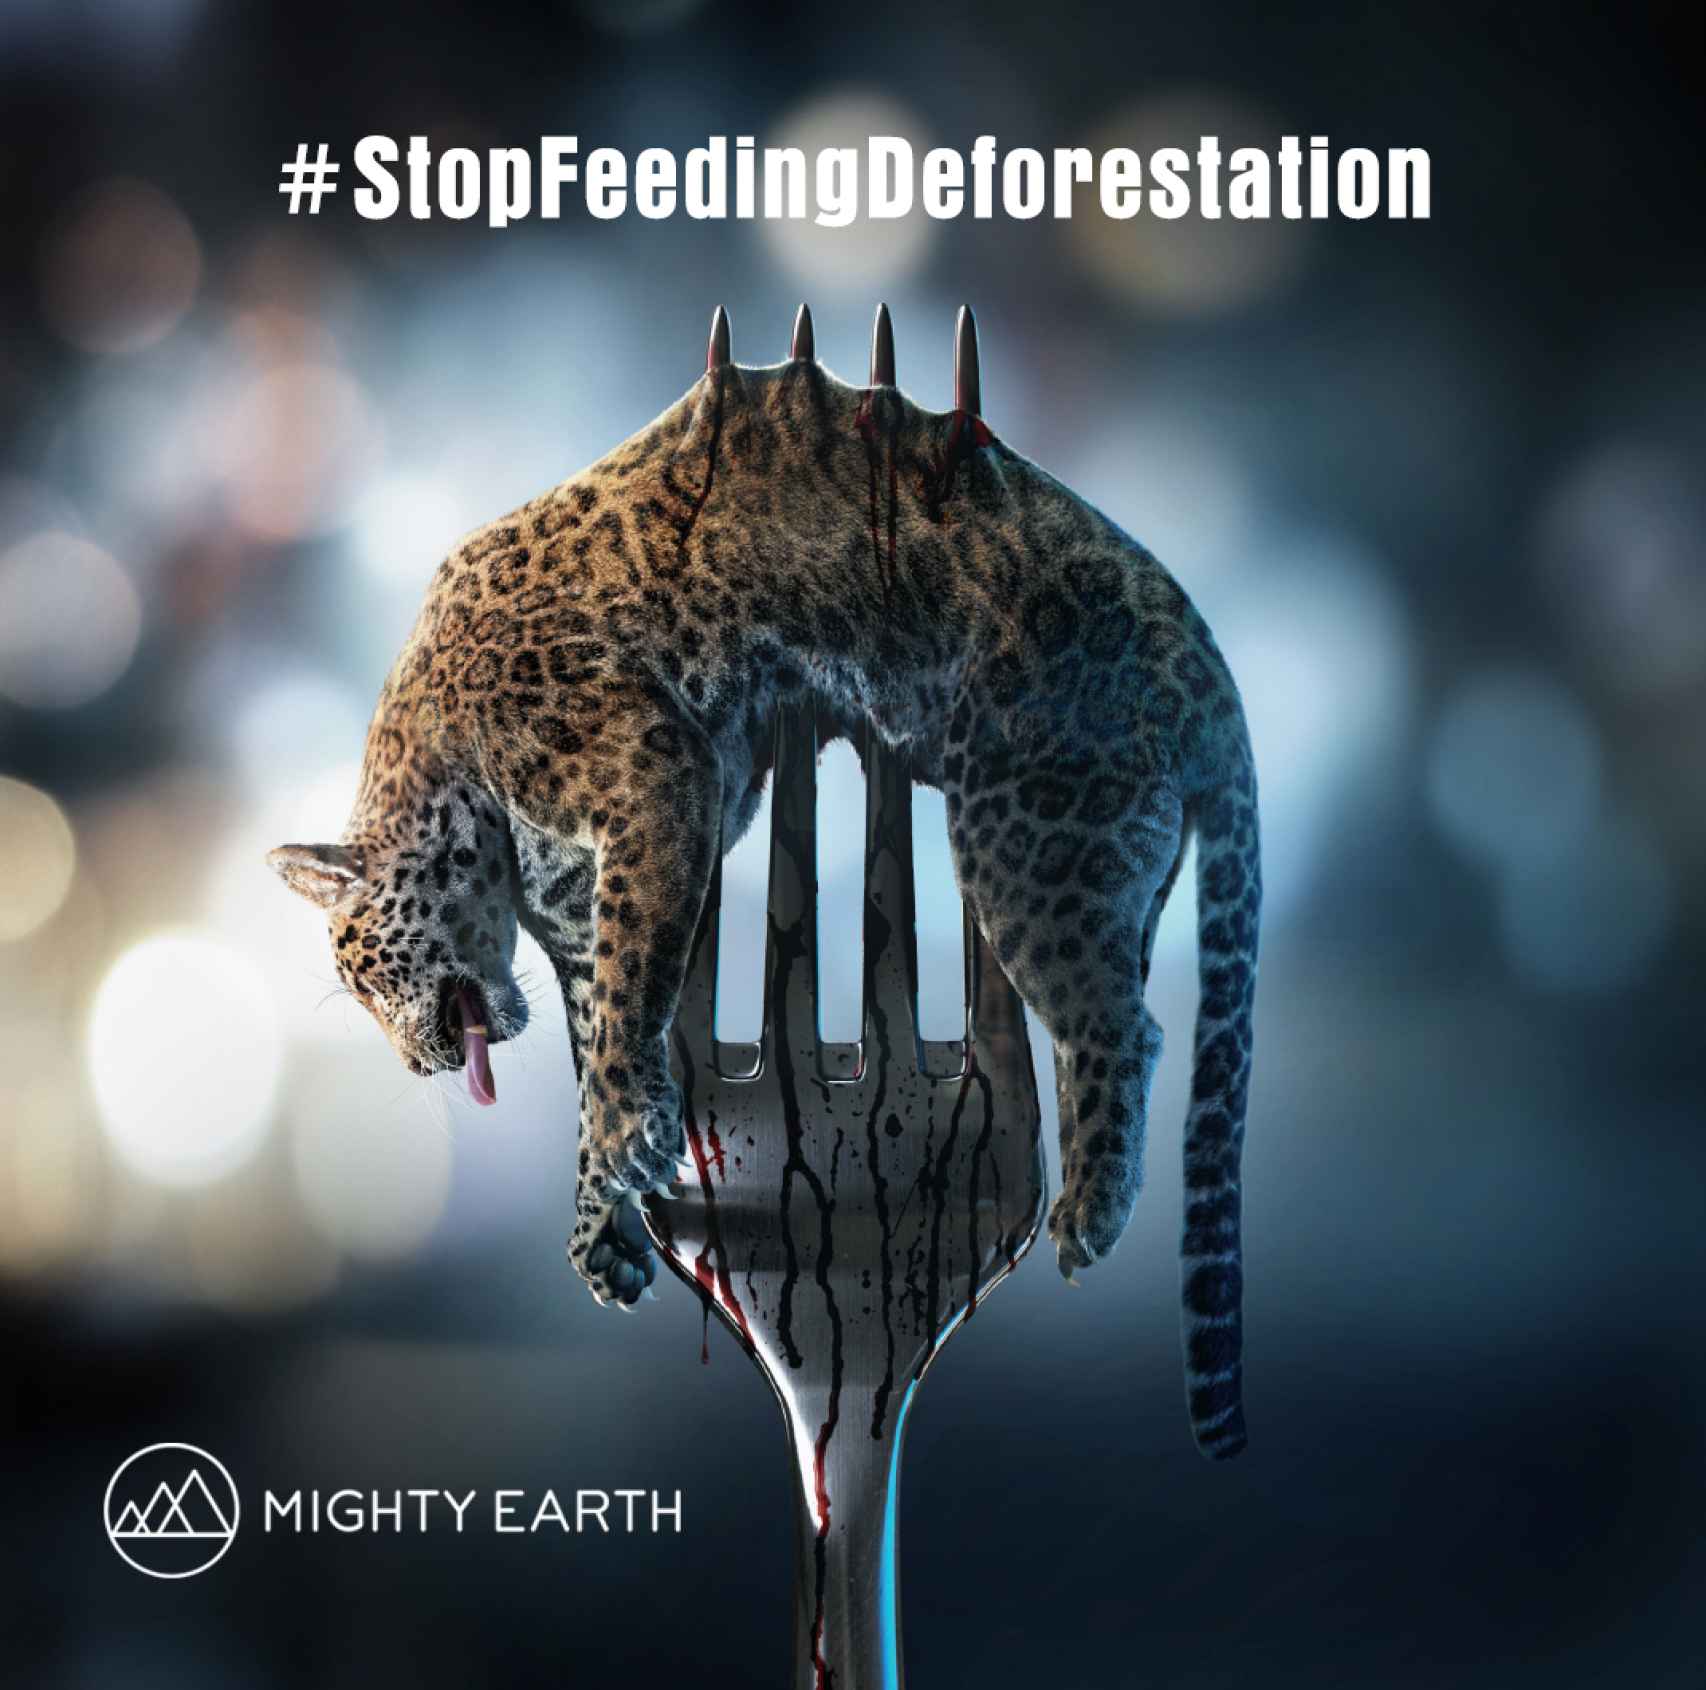 Cartel de la campaña en contra de la deforestación tropical de la organización Mighty Earth